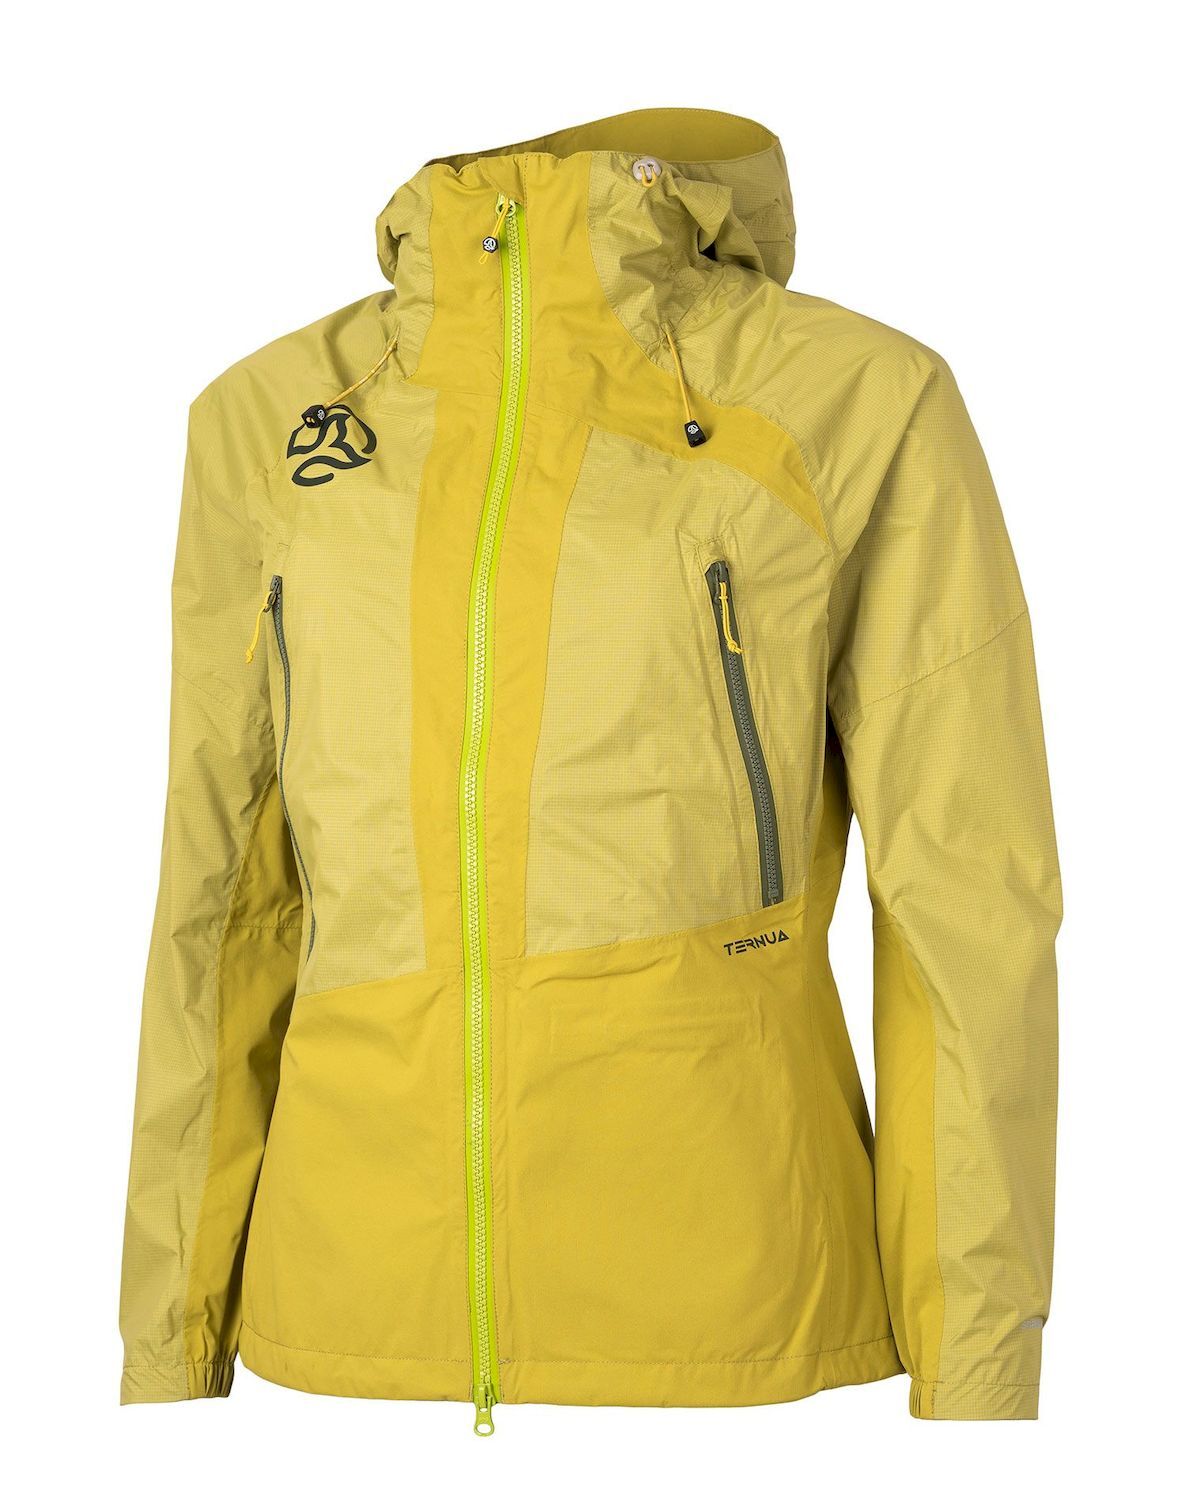 Ternua Karsa Jacket - Waterproof jacket - Women's